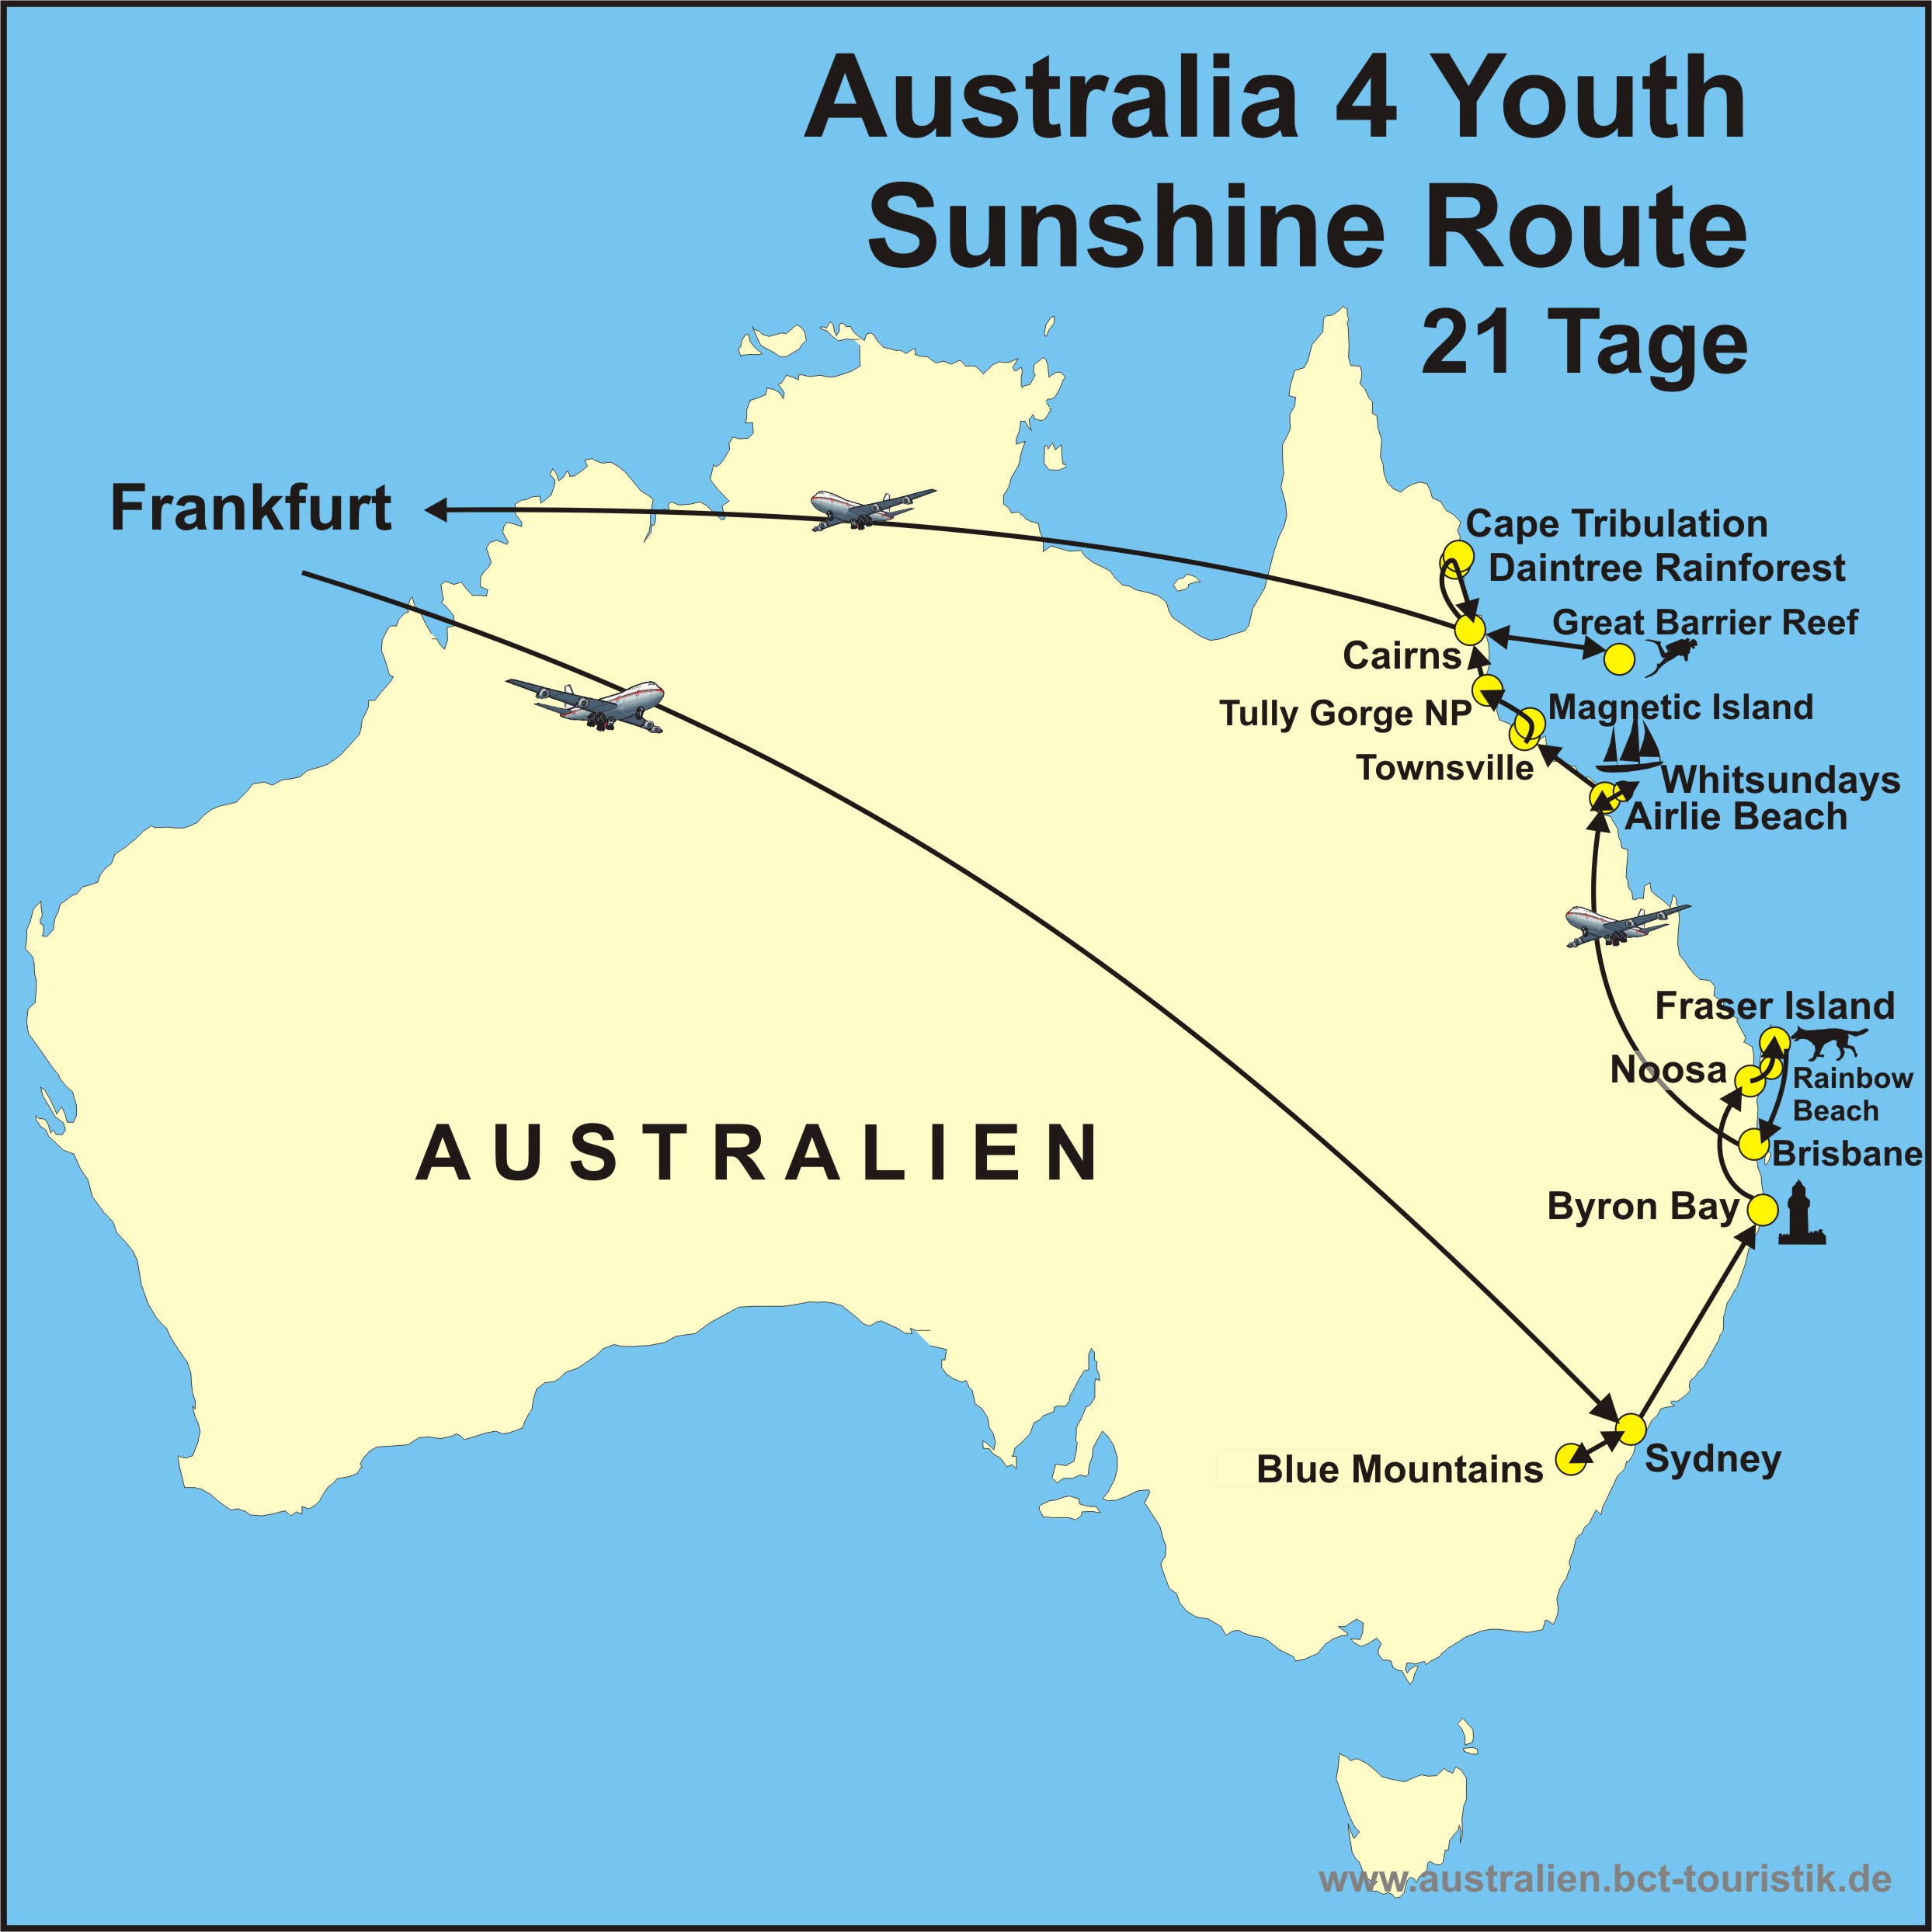 Australia4youth Sunshine Route 21tage